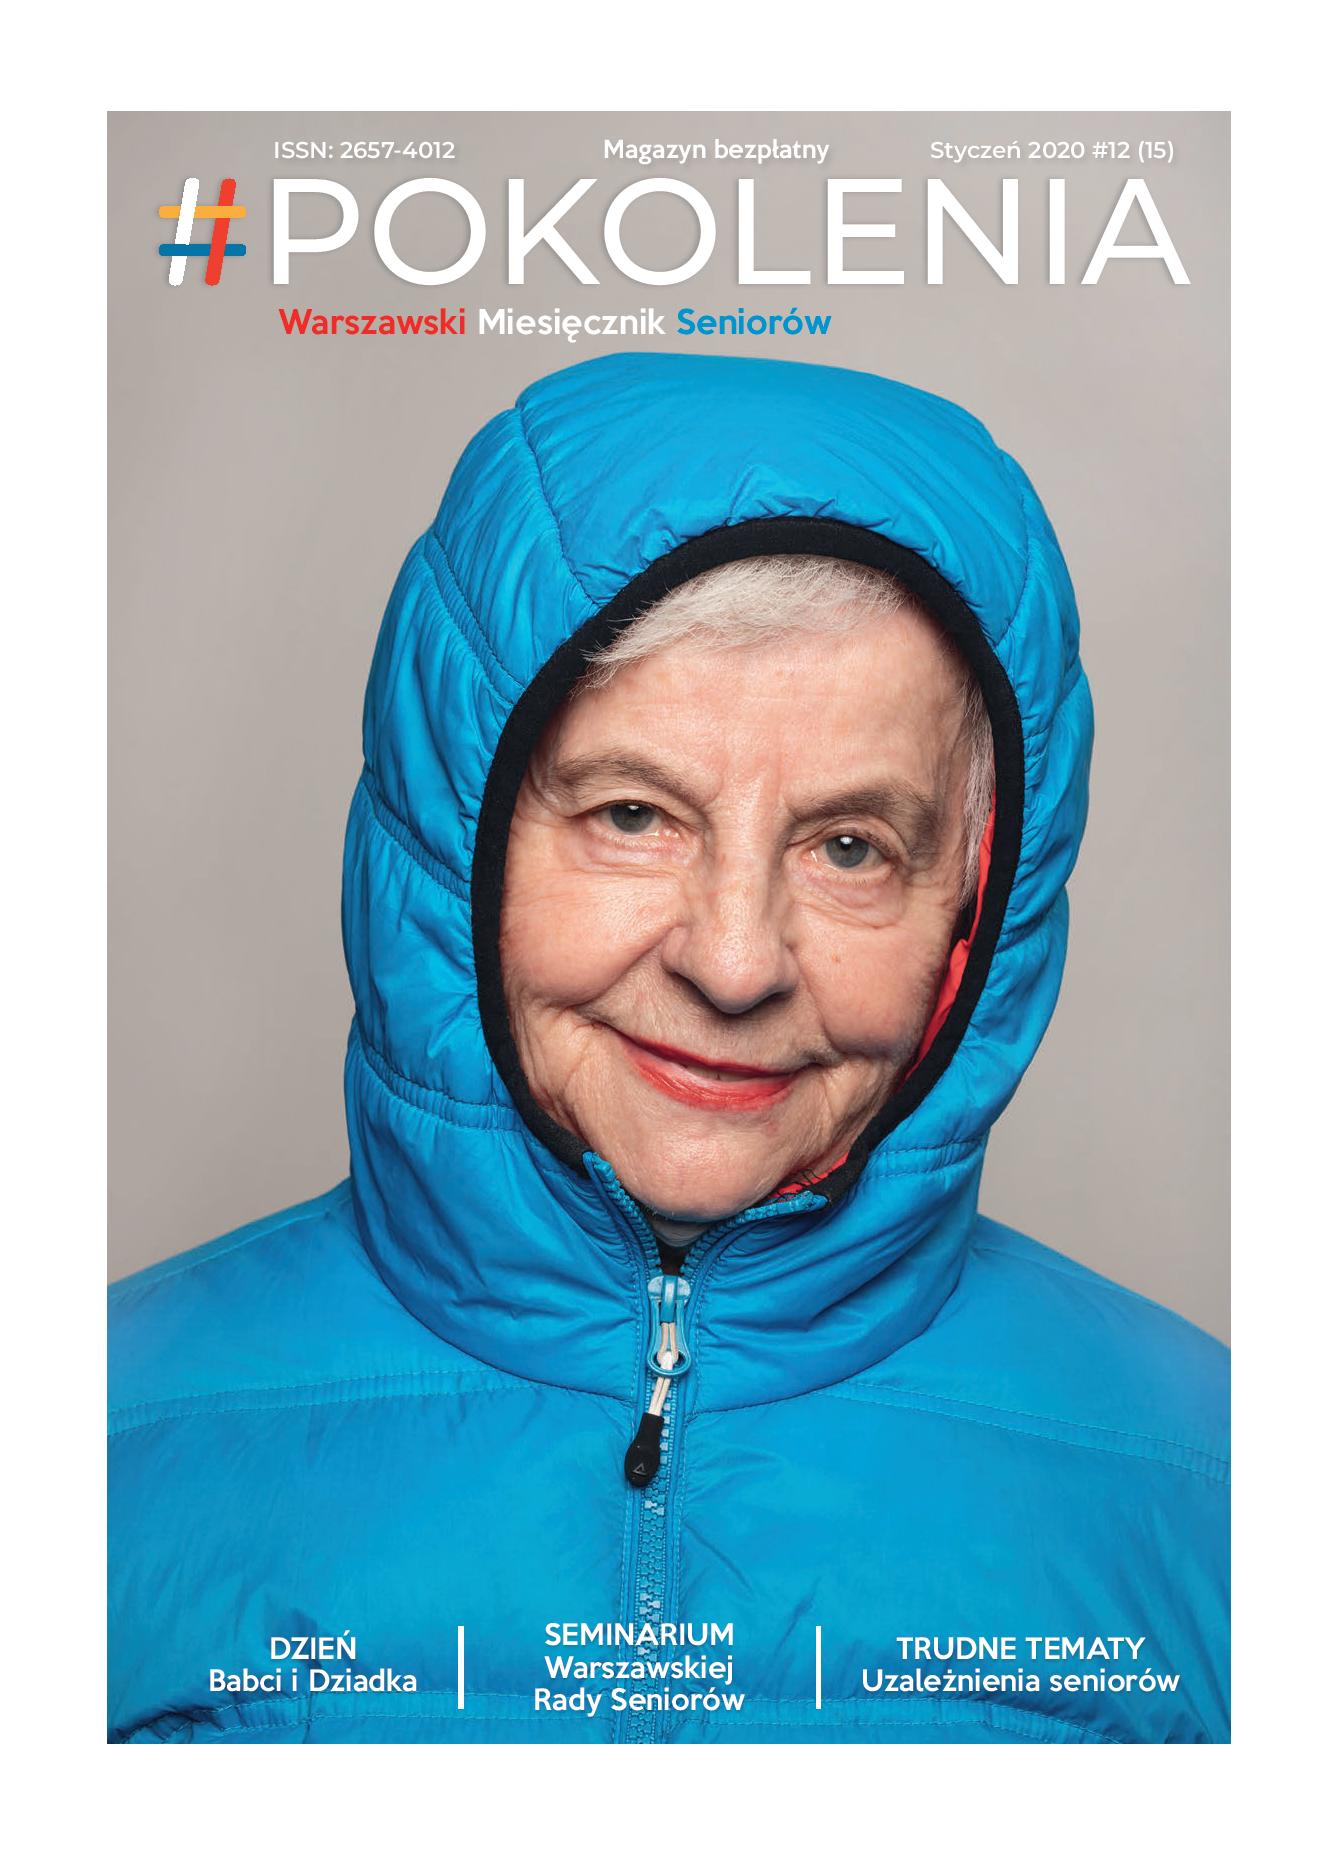 starsza kobieta w niebieskiej kurtce z kapturem na głowie, powyżej tytuł miesięcznika #POKOLENIA